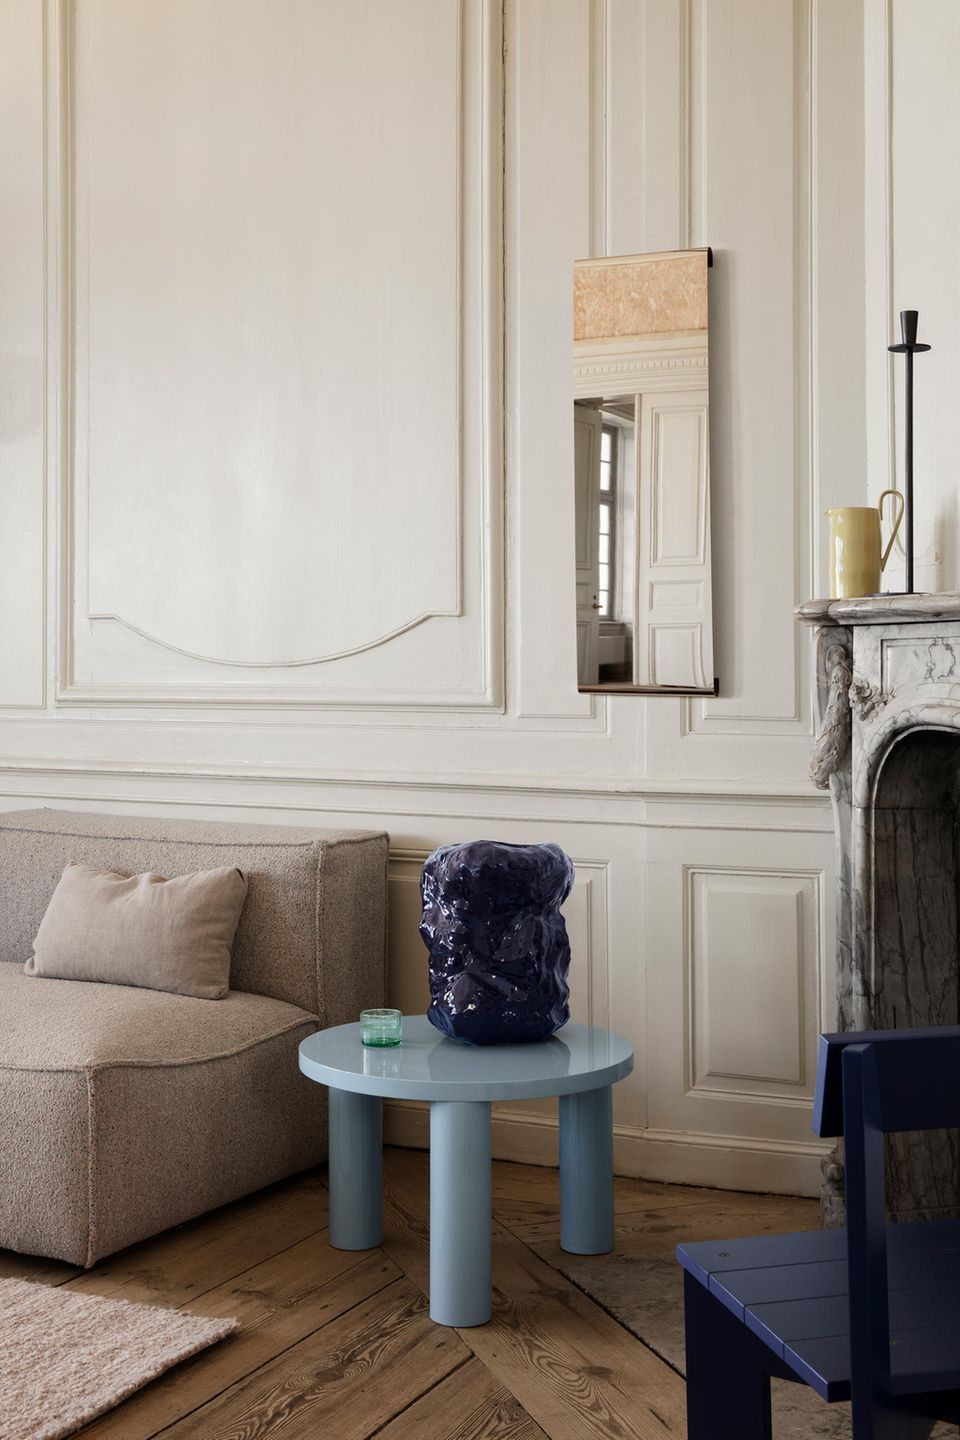 Frischer Wind: Mit Möbeln und Accessoires in Blau kreieren Sie zeitgemäße Stilbrüche in beigen Interieurs. Im SCHÖNER WOHNEN-Shop: Couchtisch Post von Ferm Living